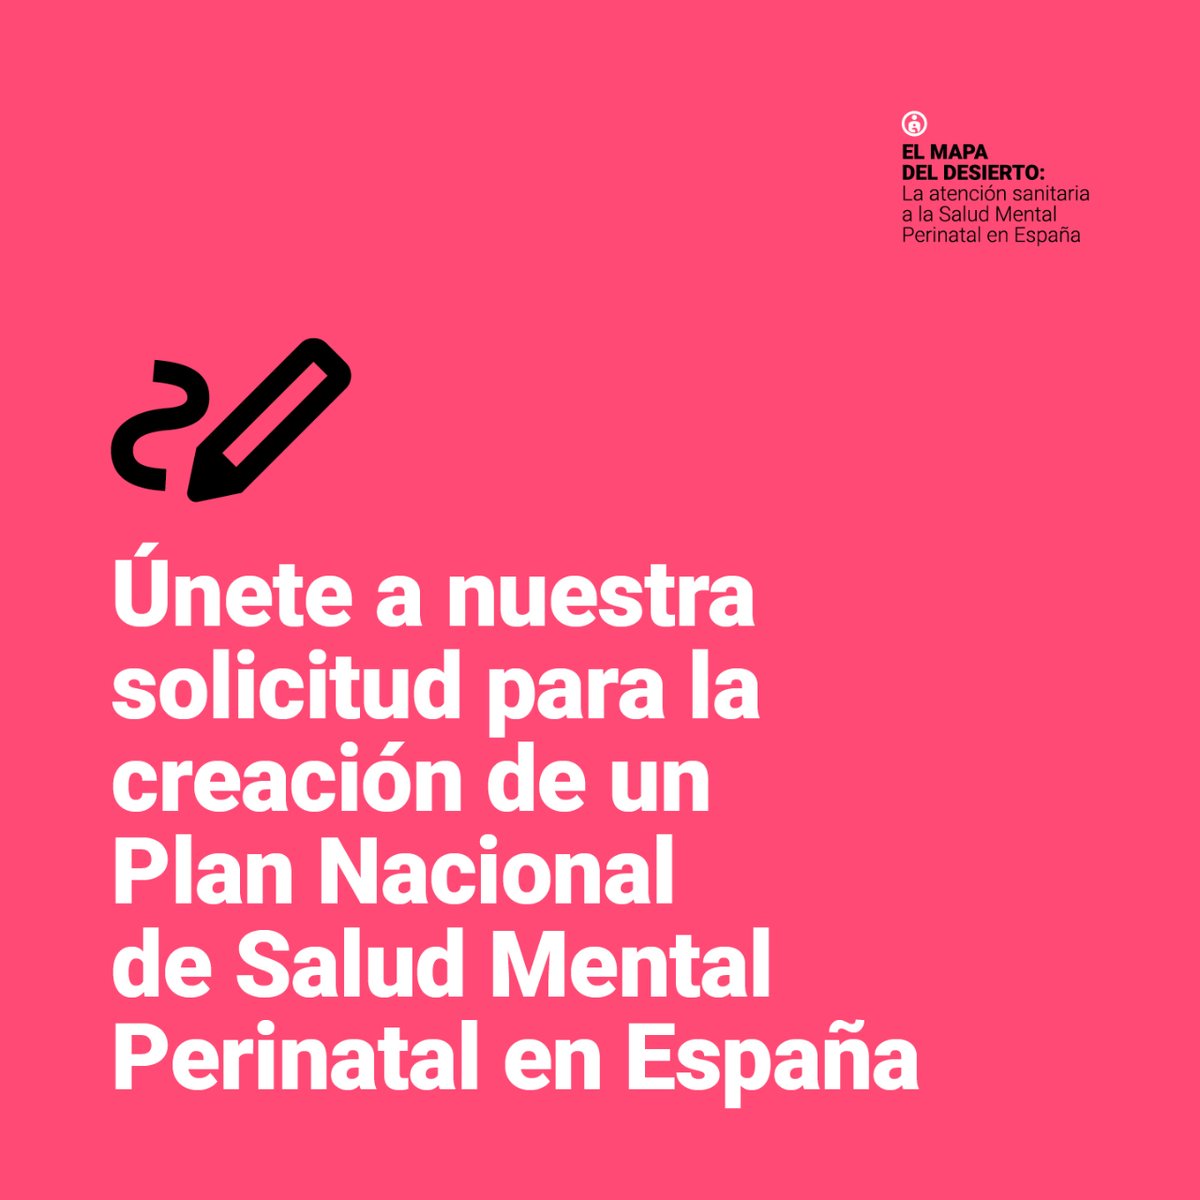 #DíaDeLaSaludMentalMaterna ¡Consideramos fundamental la creación de un Plan Nacional de Salud Mental Perinatal en España! (hilo🧵)